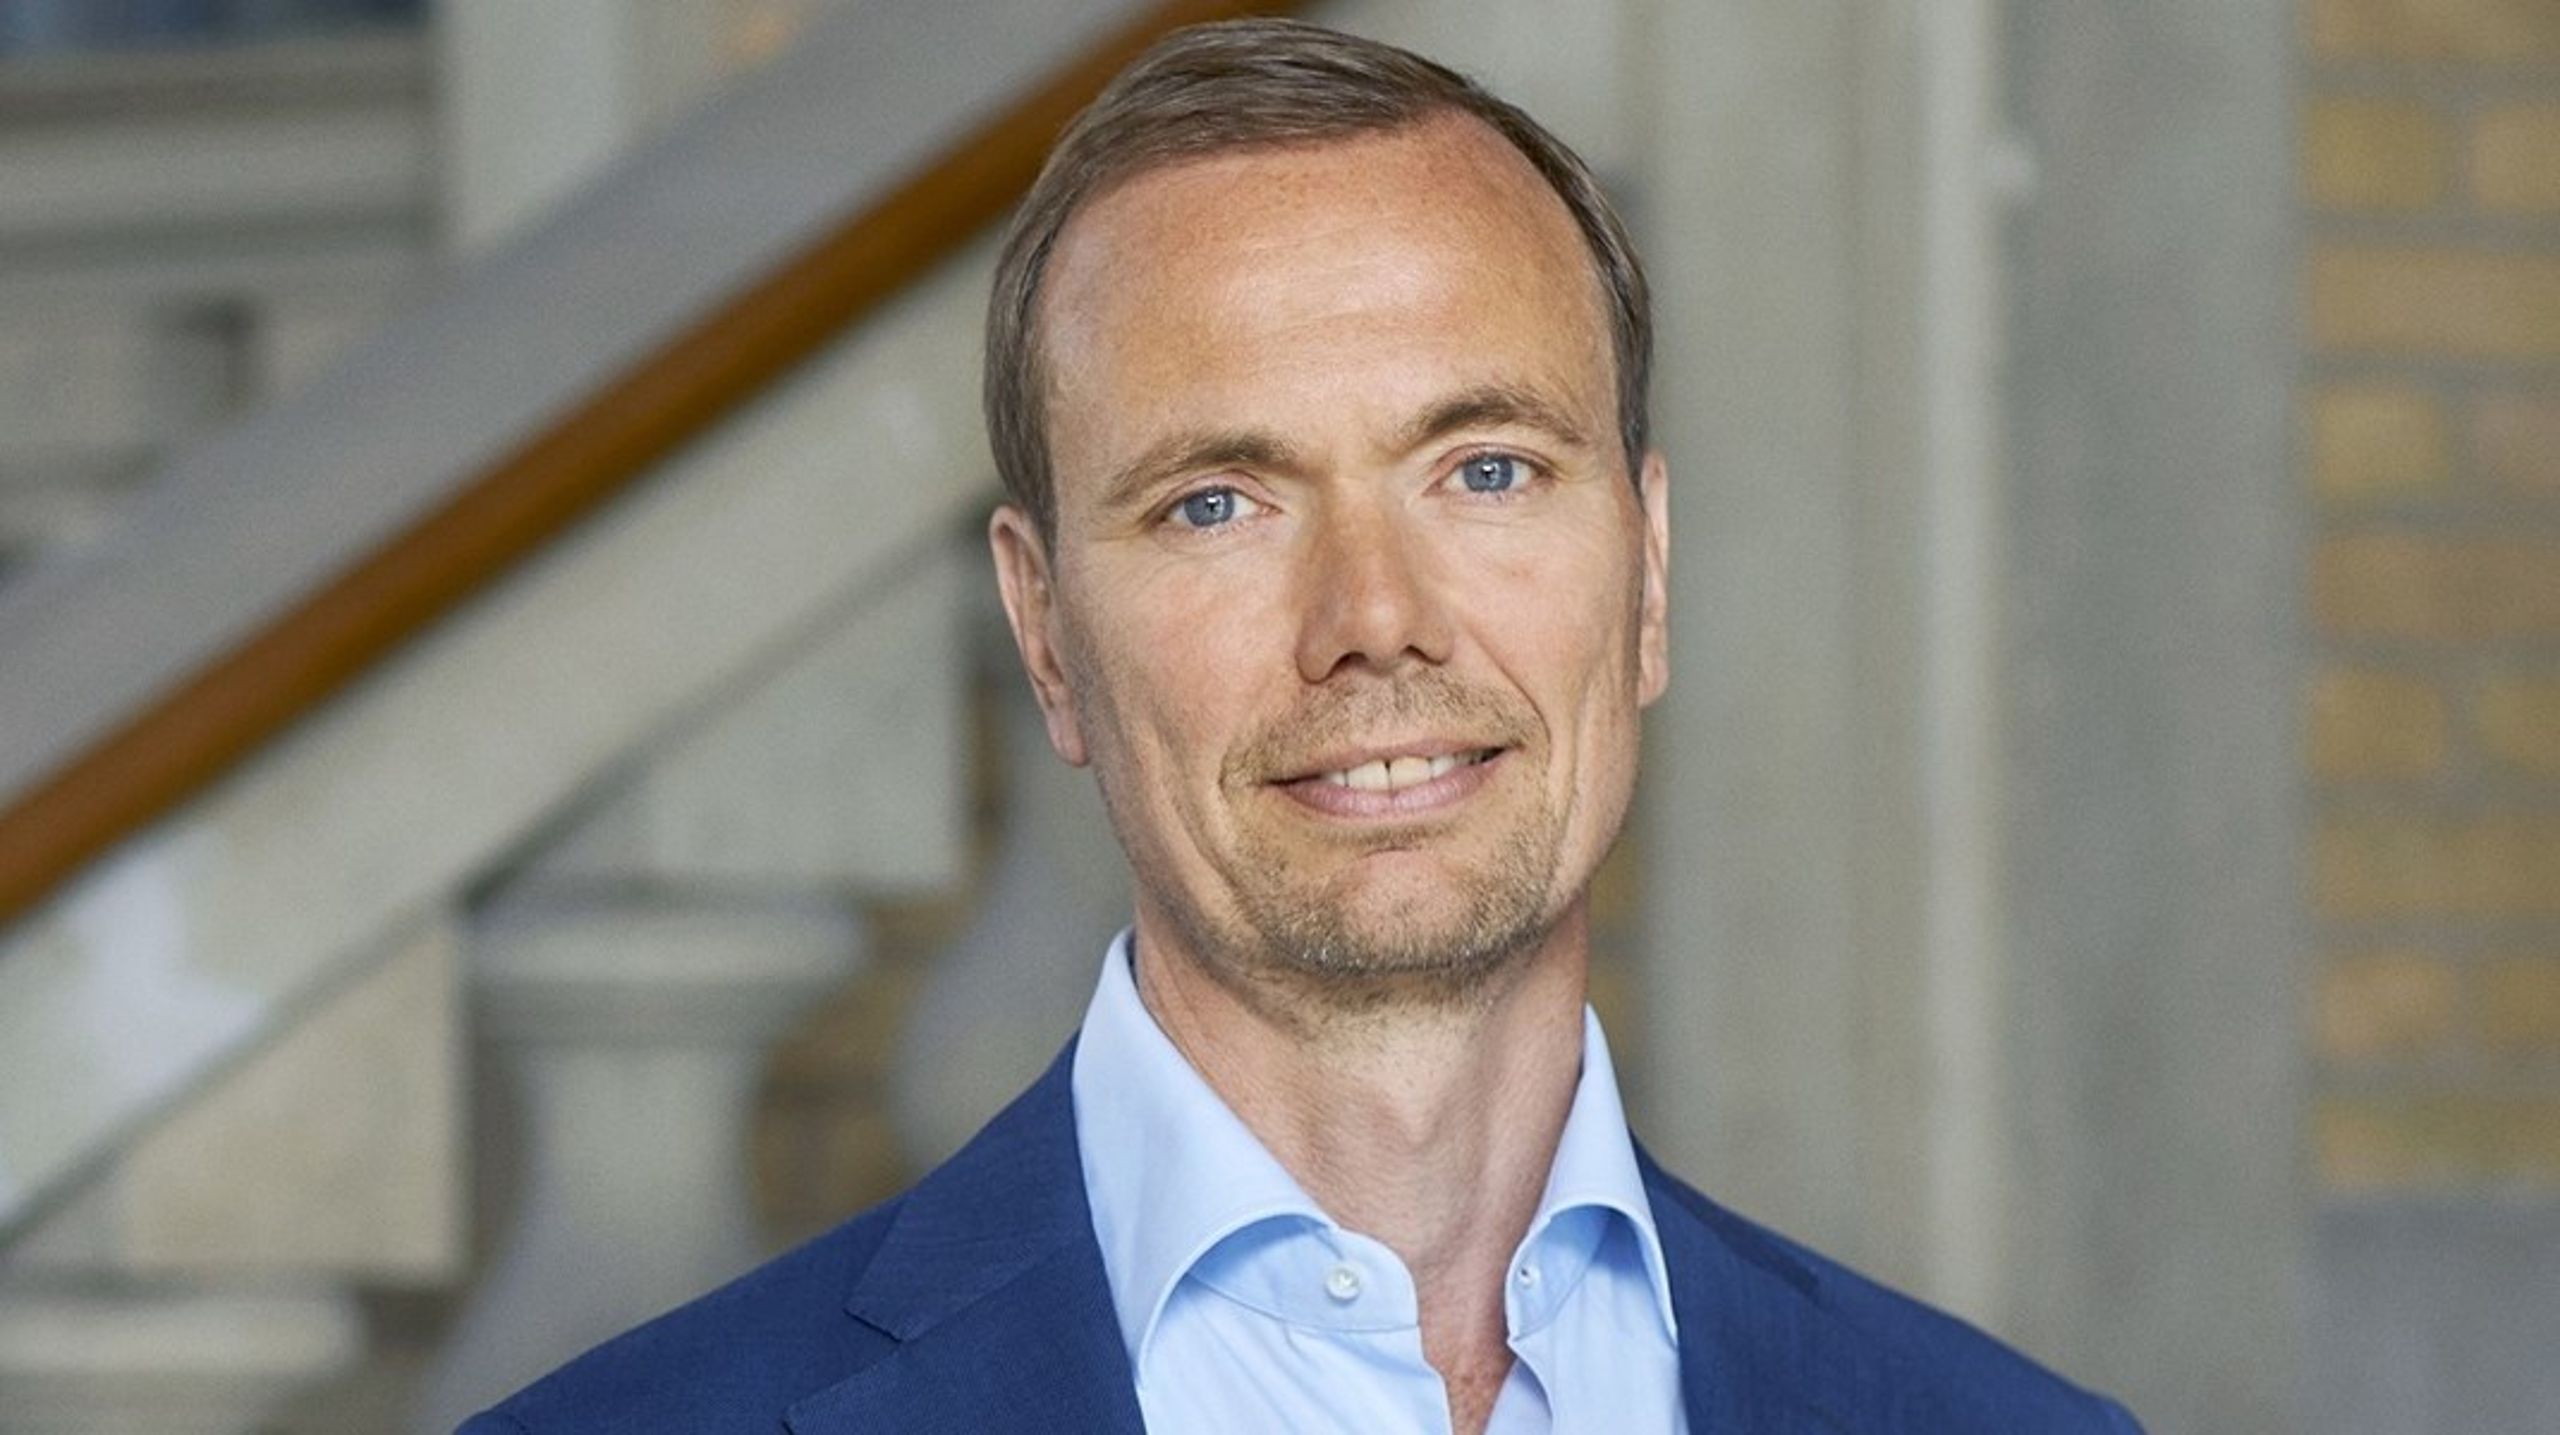 Svend Særkjær blev ansat under corna-krisen, men har en lang
karriere bag sig i Sundhedsministeriet og har været øverste embedsmand i to
regioner.